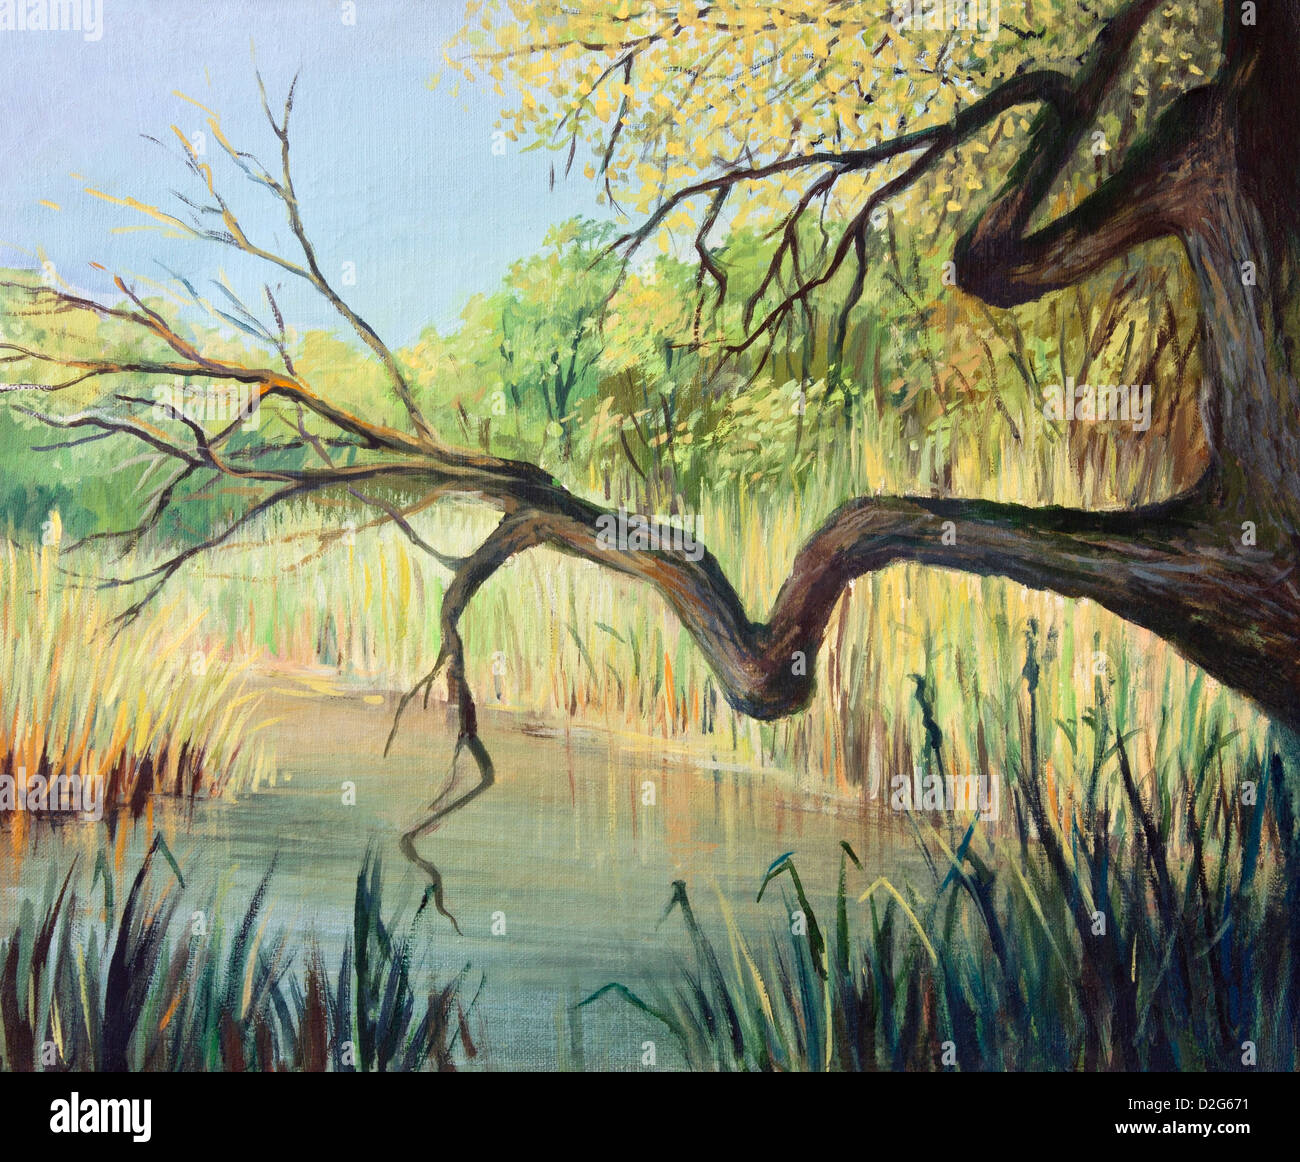 Une peinture à l'huile sur toile d'un petit lac paisible dans le début de l'automne. Un lieu plein de quiétude. Banque D'Images